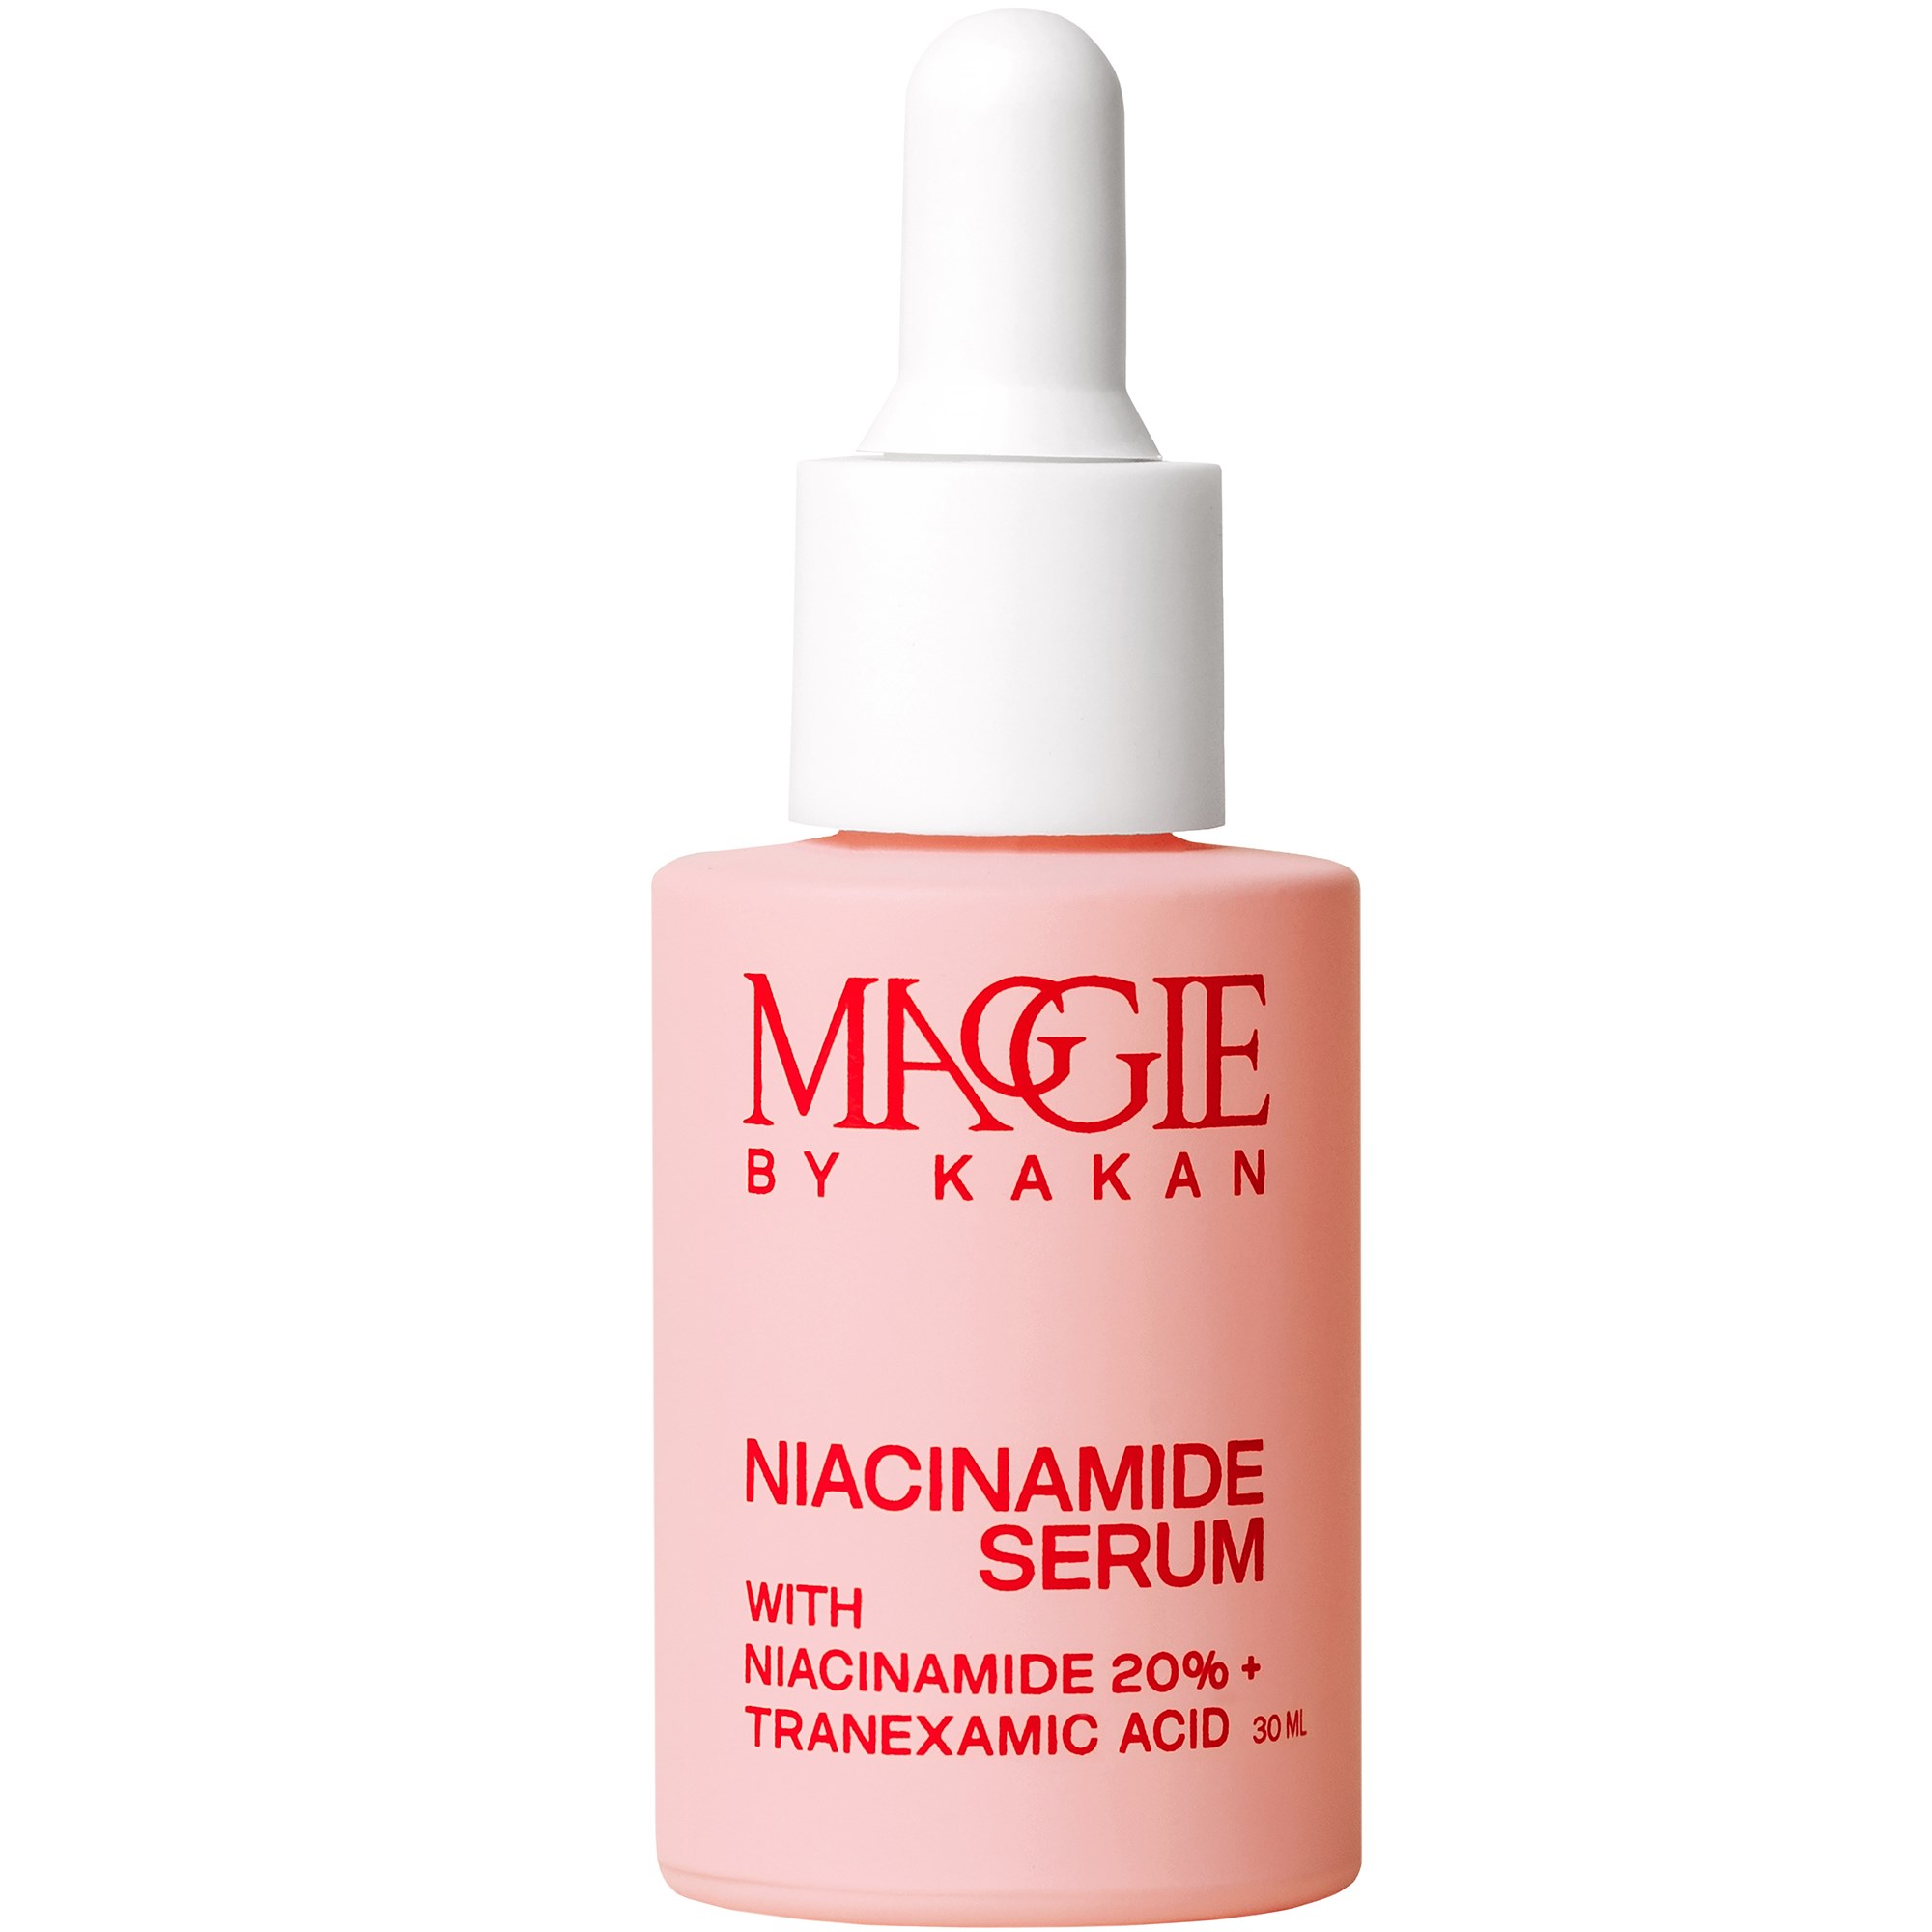 MAGGIE by Kakan Niacinamide Serum 30 ml